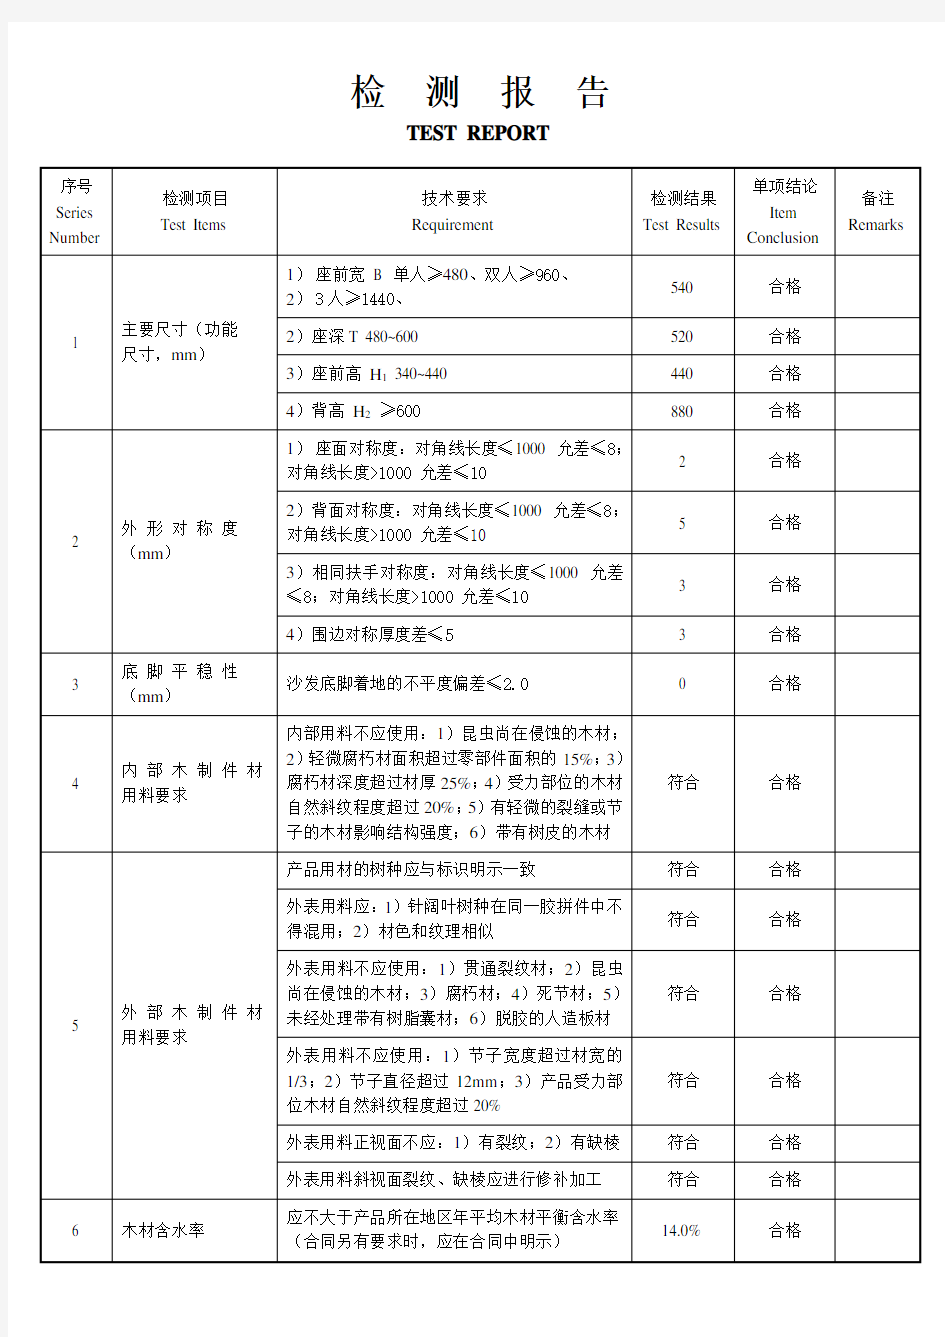 浙江省家具产品质量检验中心检测报告